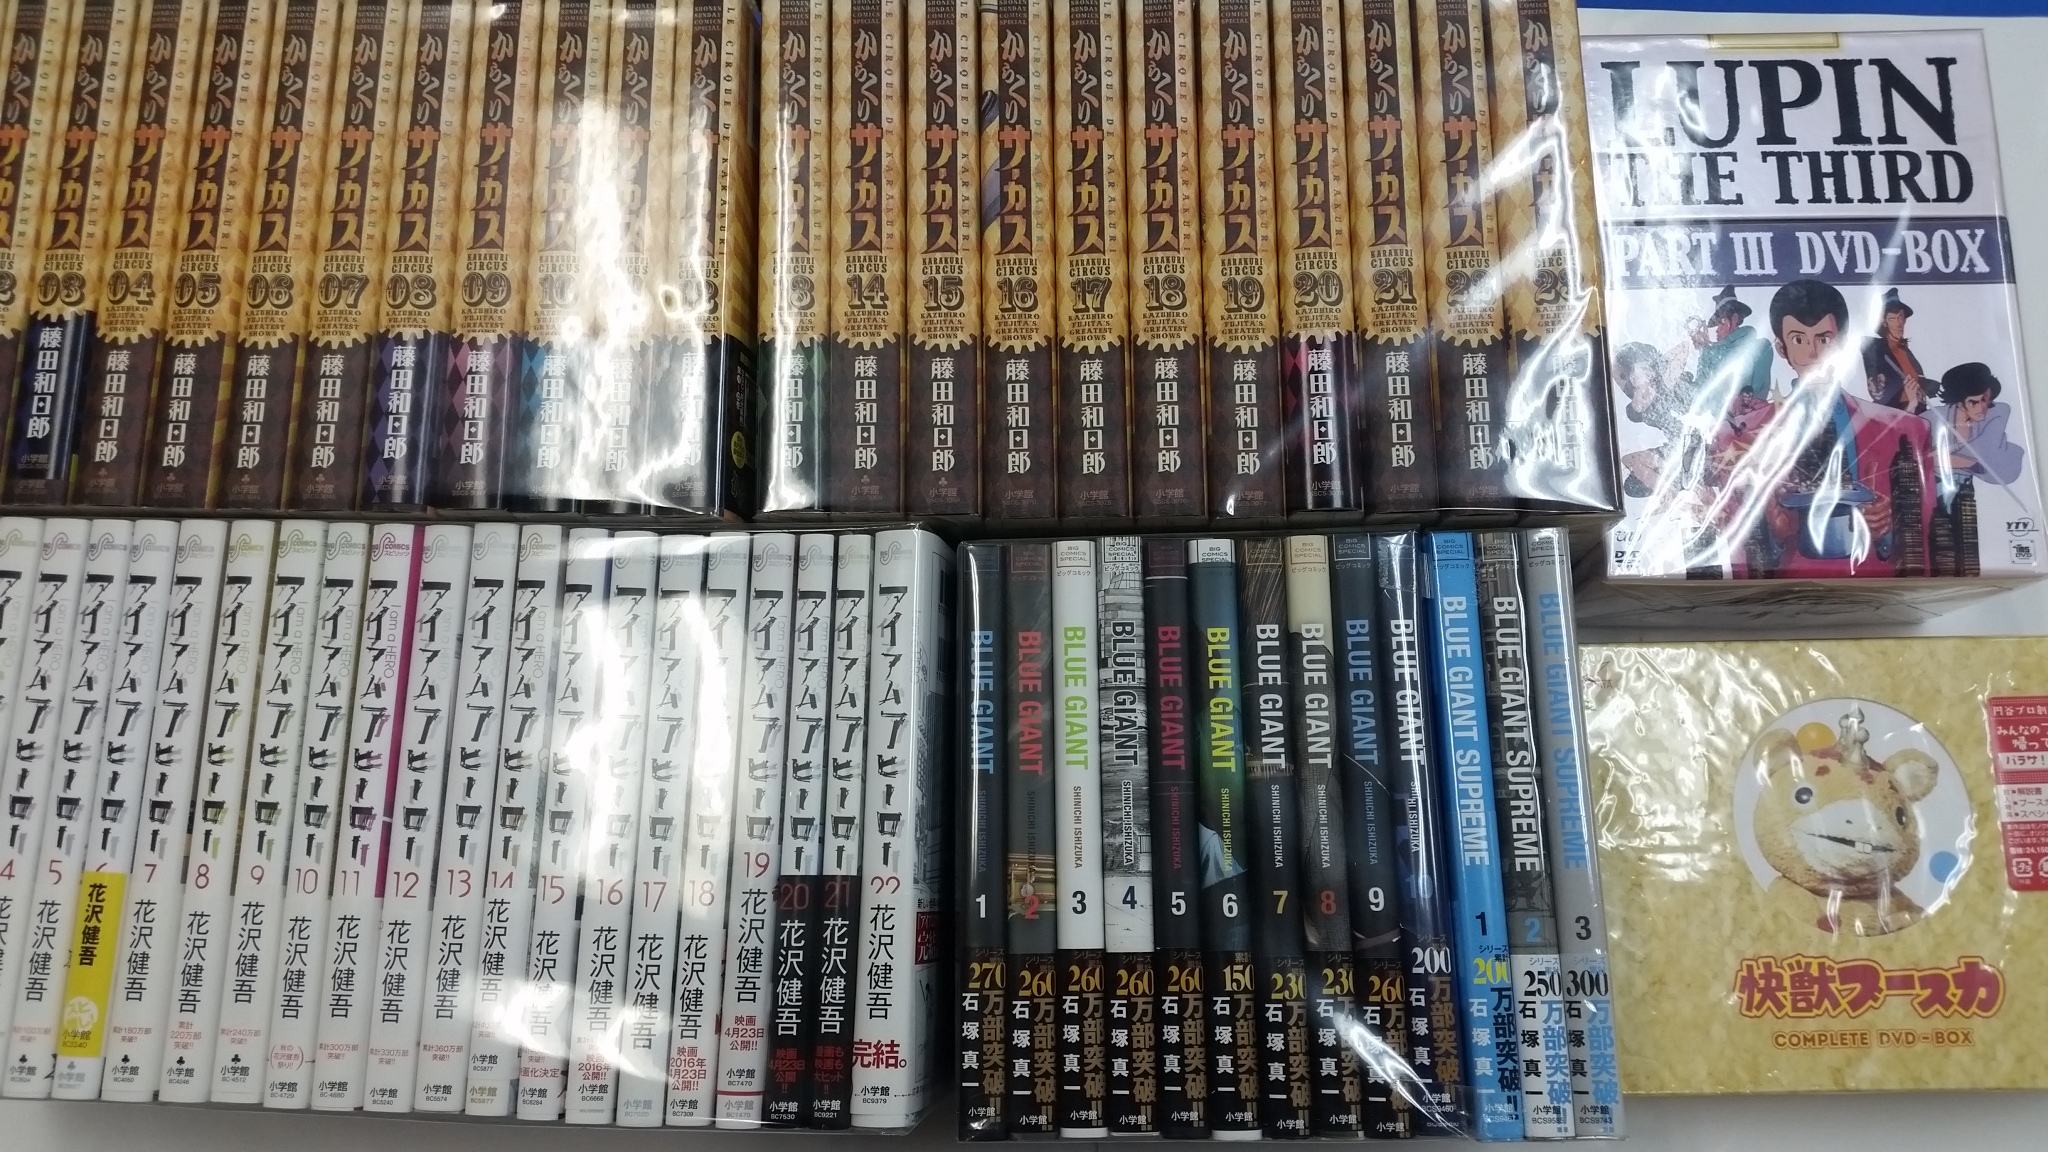 江戸川区船堀 ゲーム・トレカ・DVDの販売買取はモトナワールド